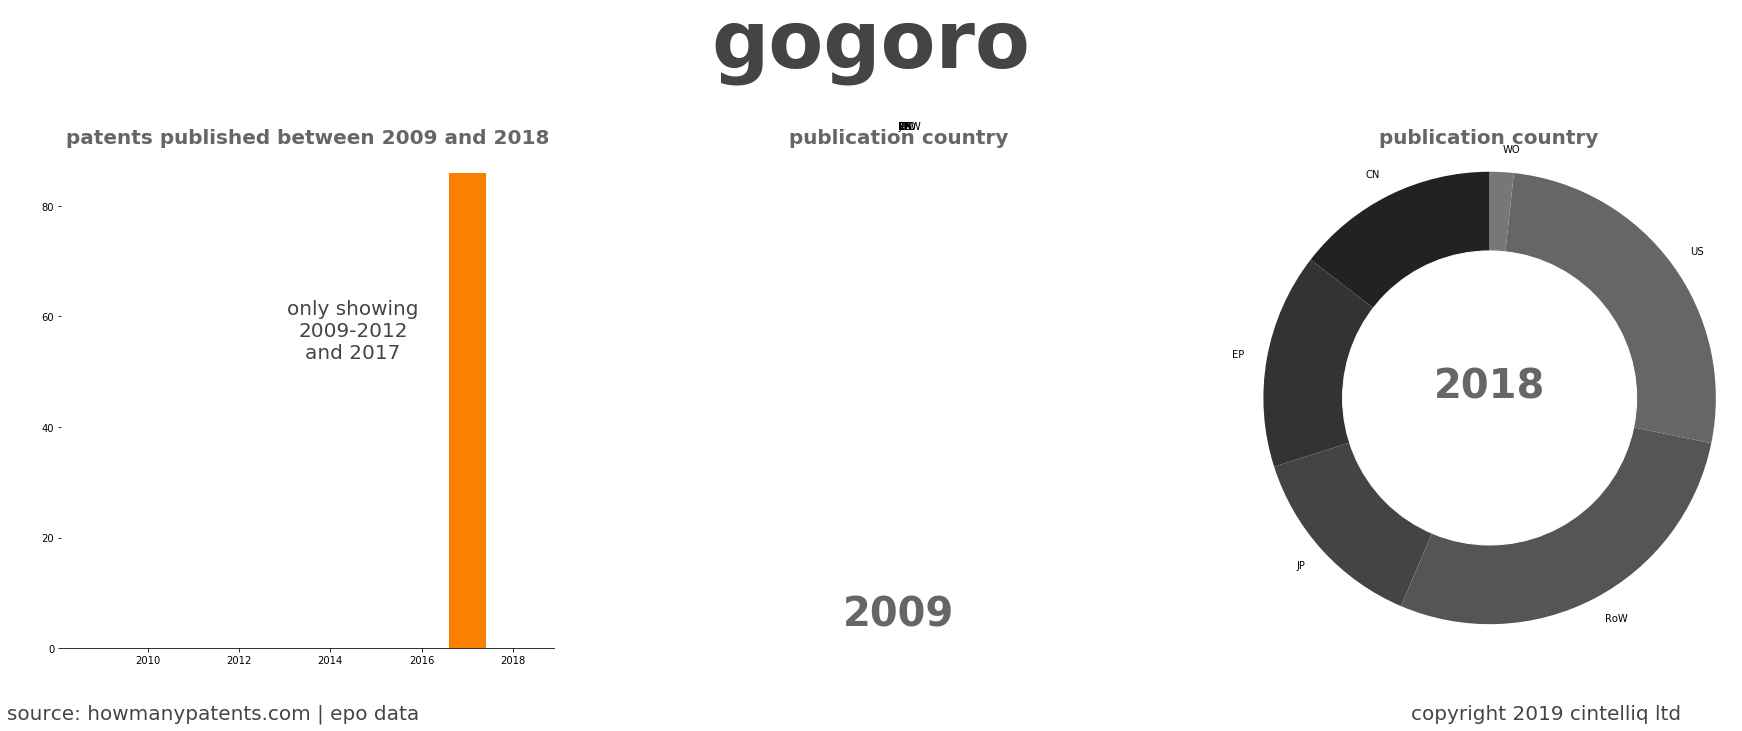 summary of patents for Gogoro